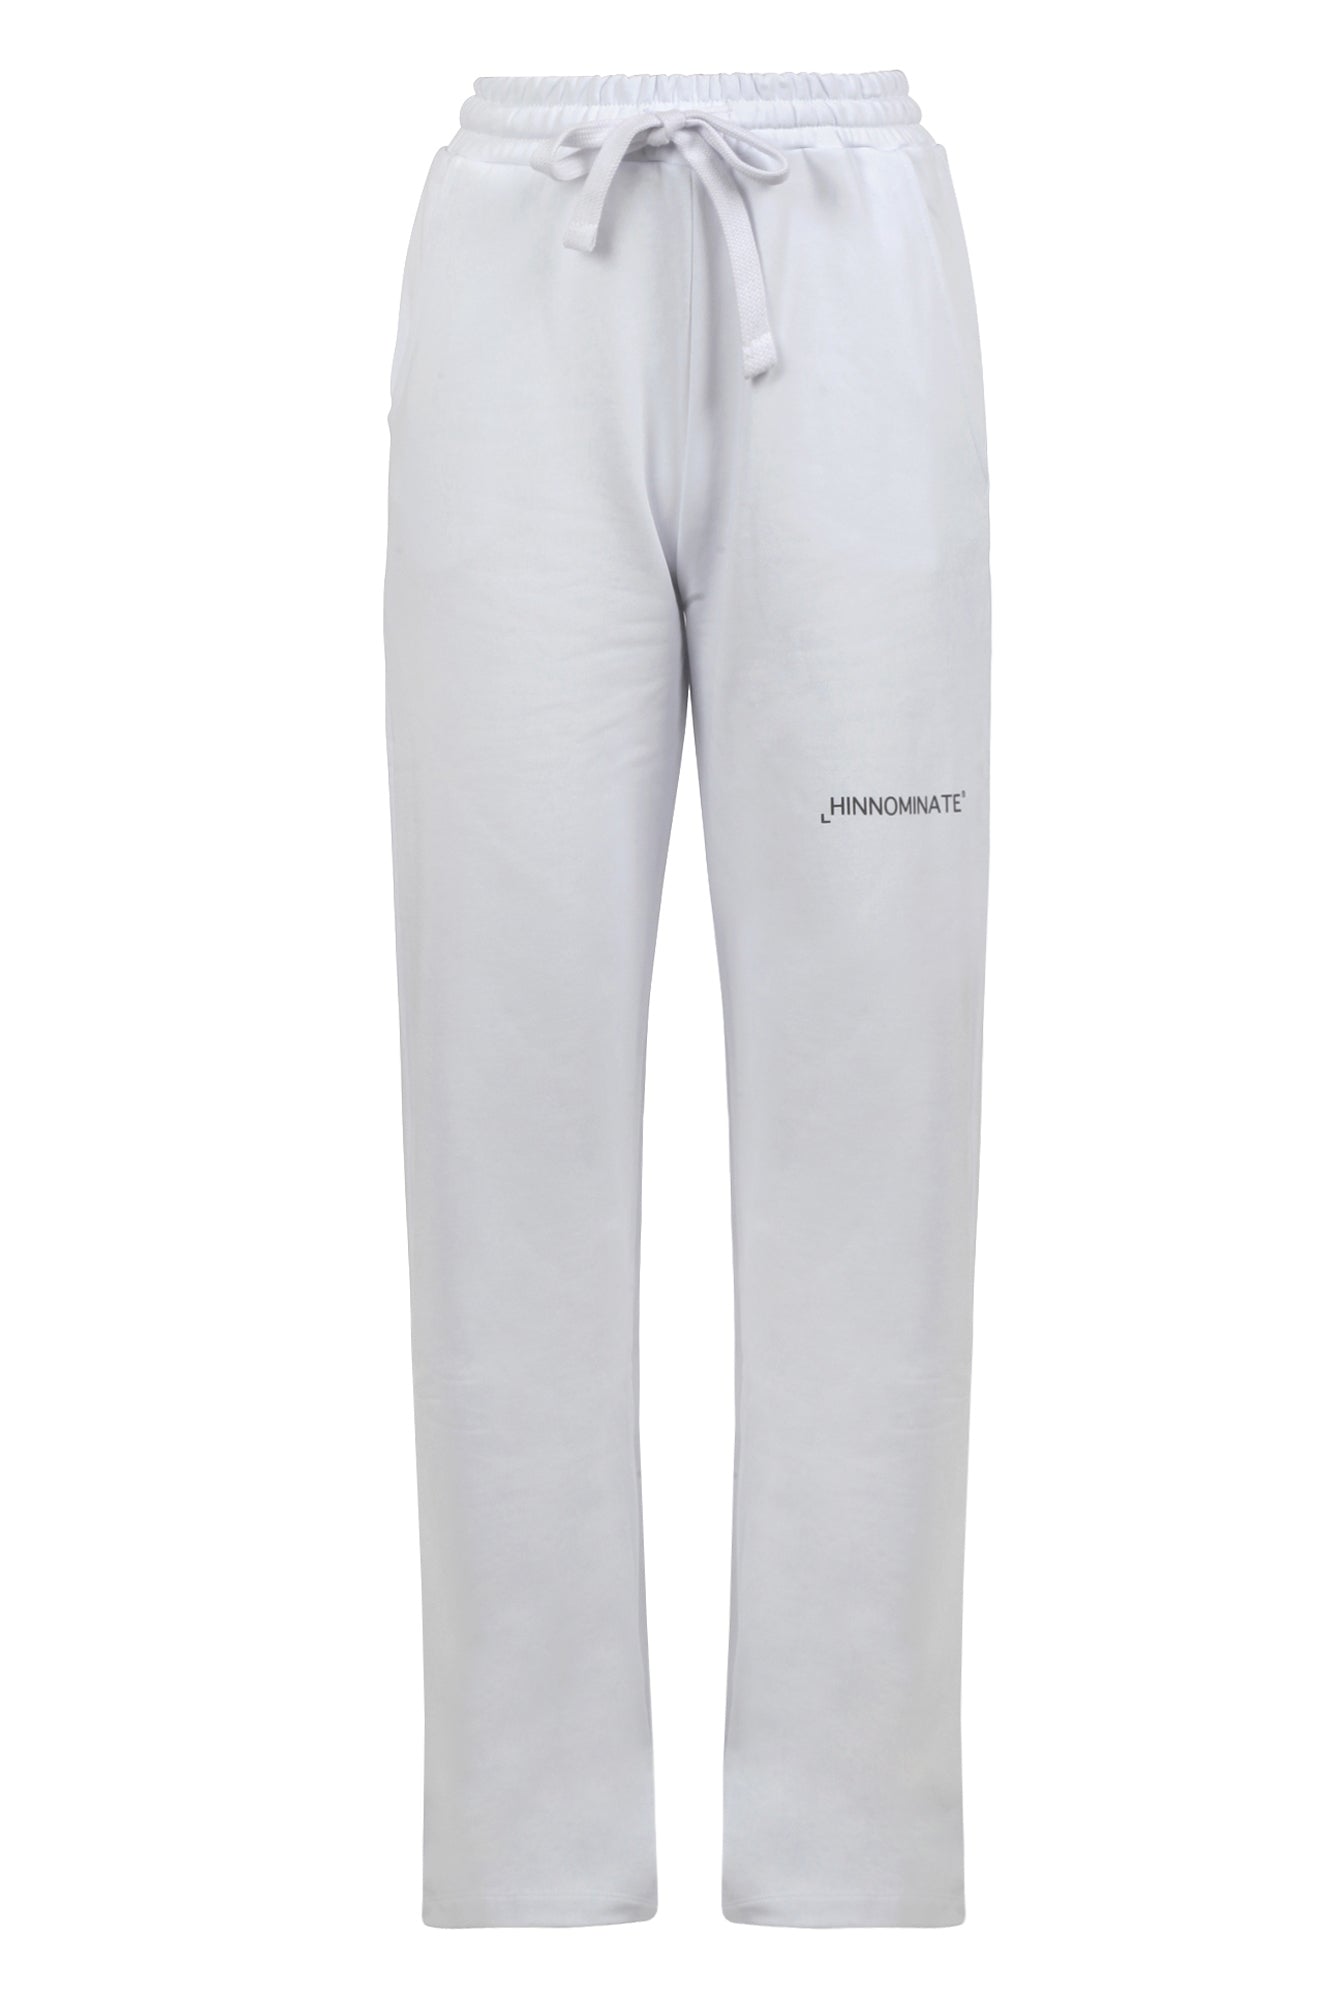 Hinnominate - Pantalone - 430081 - Bianco